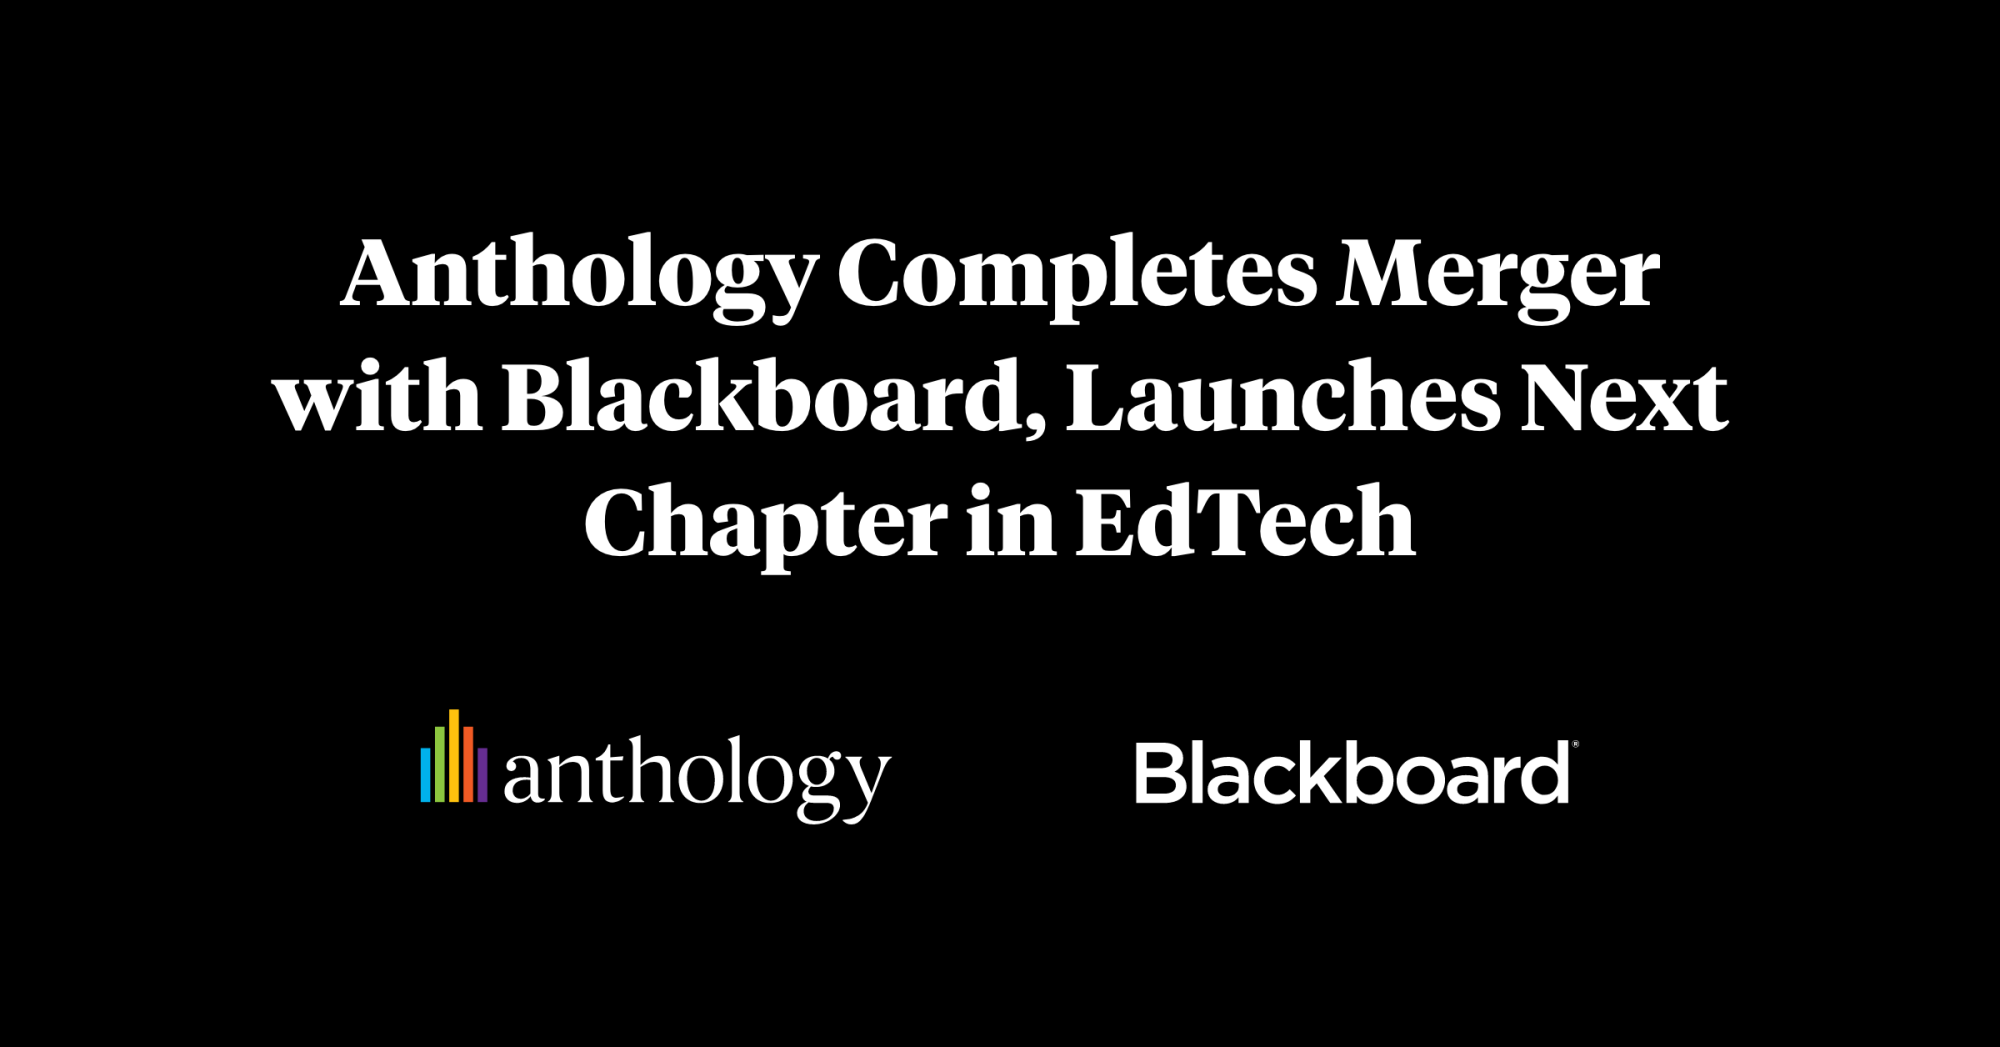 Anthology và Blackboard đã hoàn tất việc sáp nhập và chào đón chương trình tiếp theo. Đó là một bước quan trọng đến sự thành công của cả hai công ty. Hãy cùng khám phá và theo dõi hành trình tiếp theo của họ!